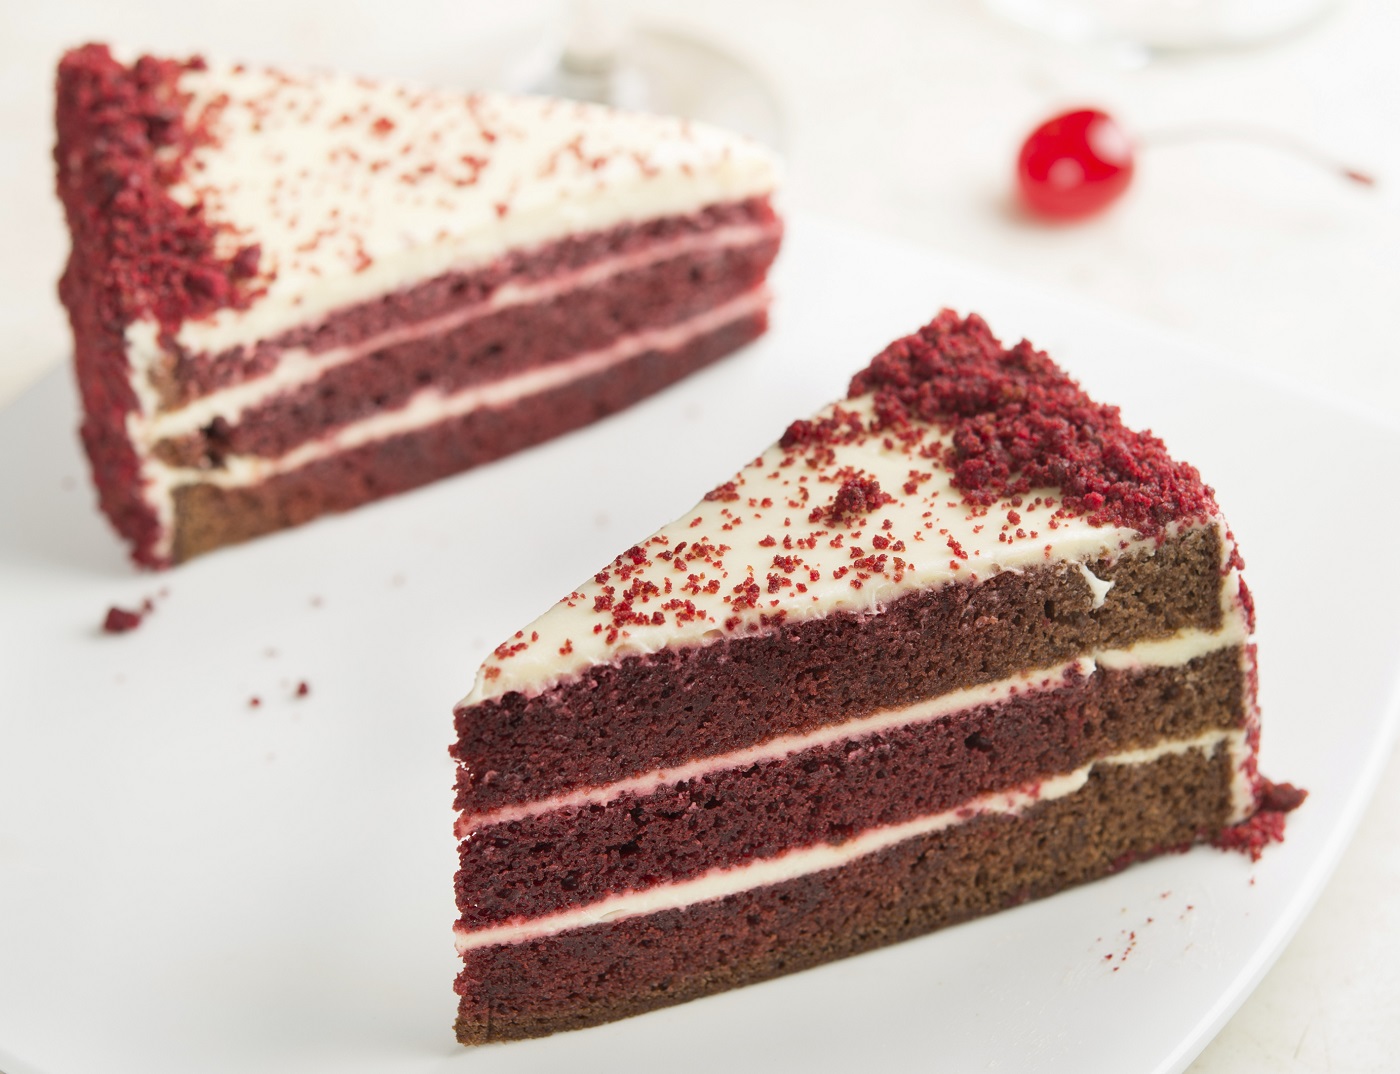 Red velvet: come fare la torta con la ricetta originale